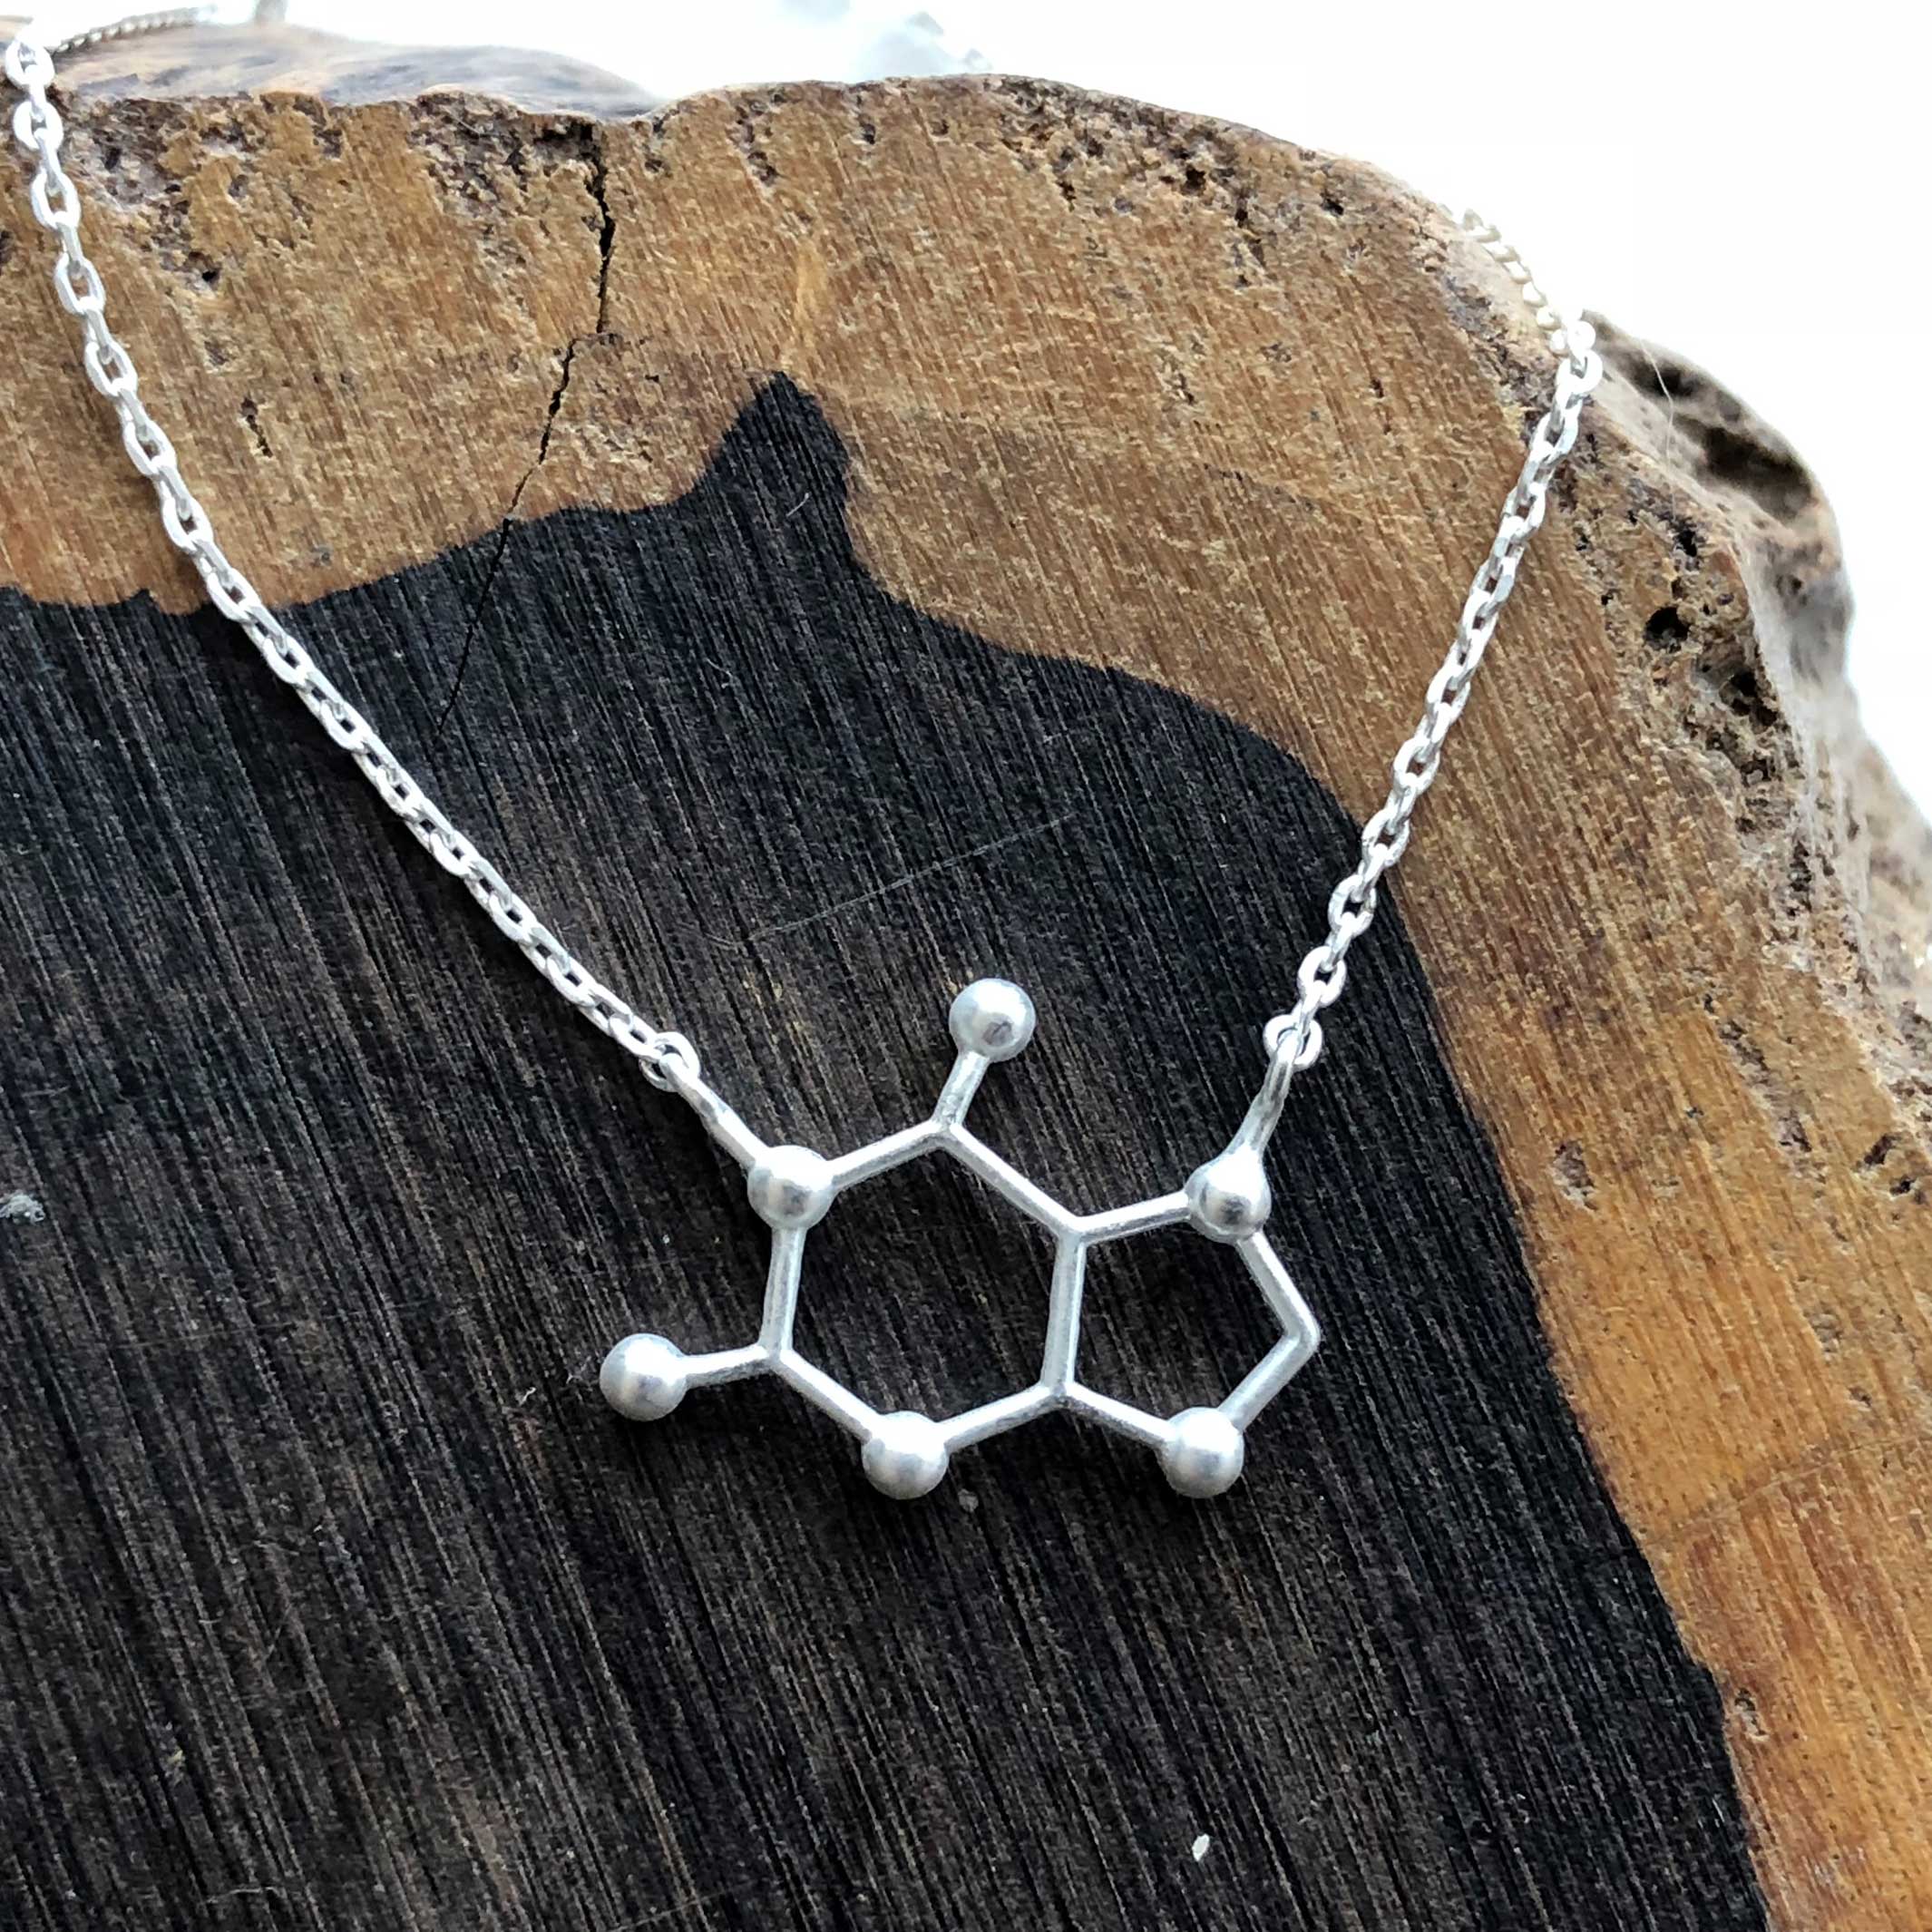 oxytocin molecule necklace